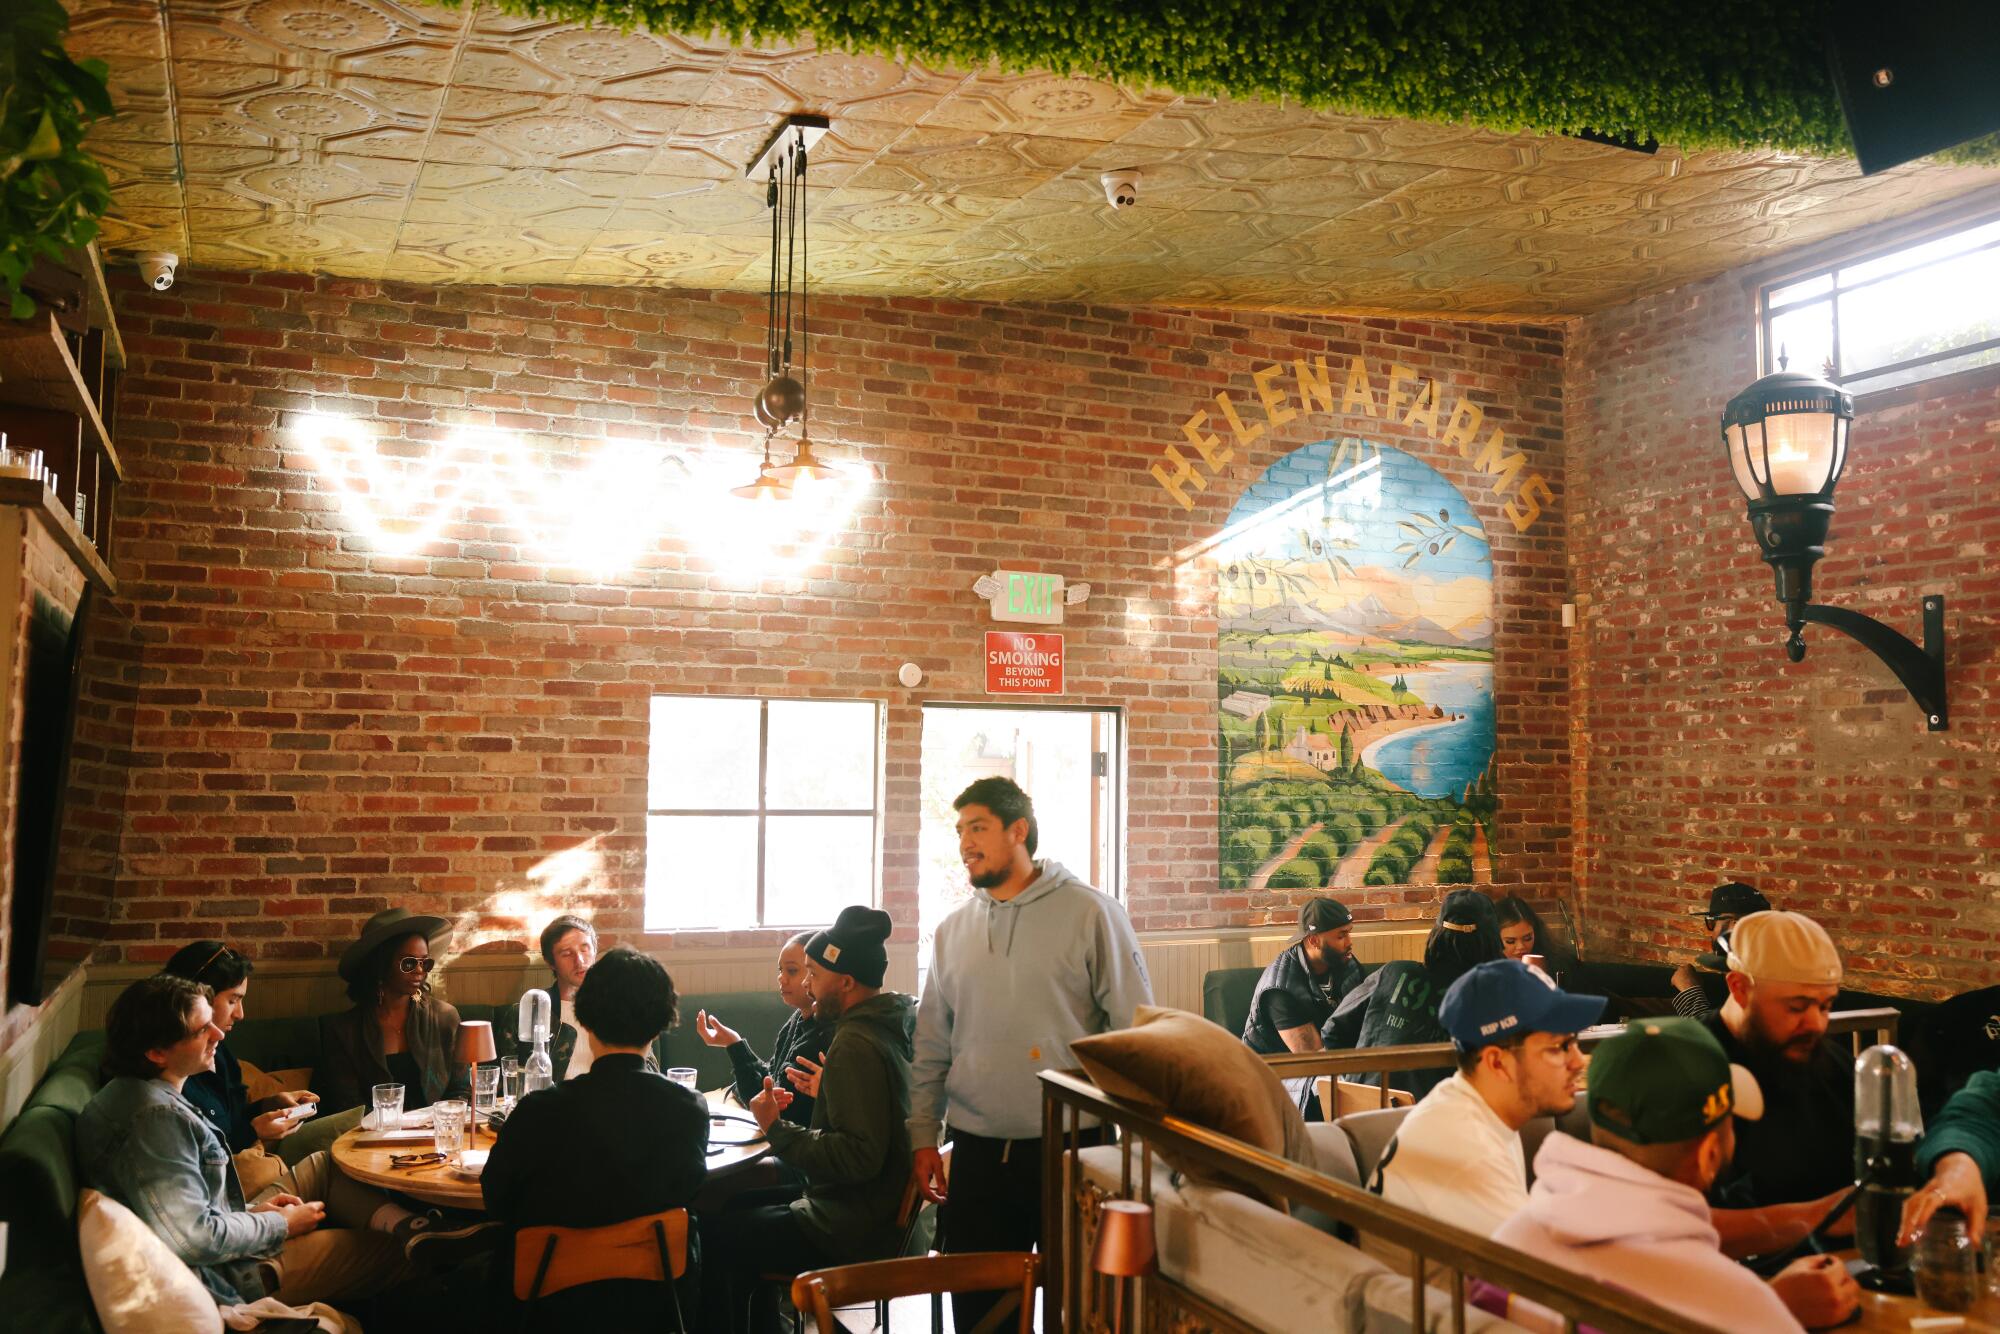 Menschen sitzen in einem Restaurant-ähnlichen Raum mit Backsteinwänden und Cannabis-Markenkunst.